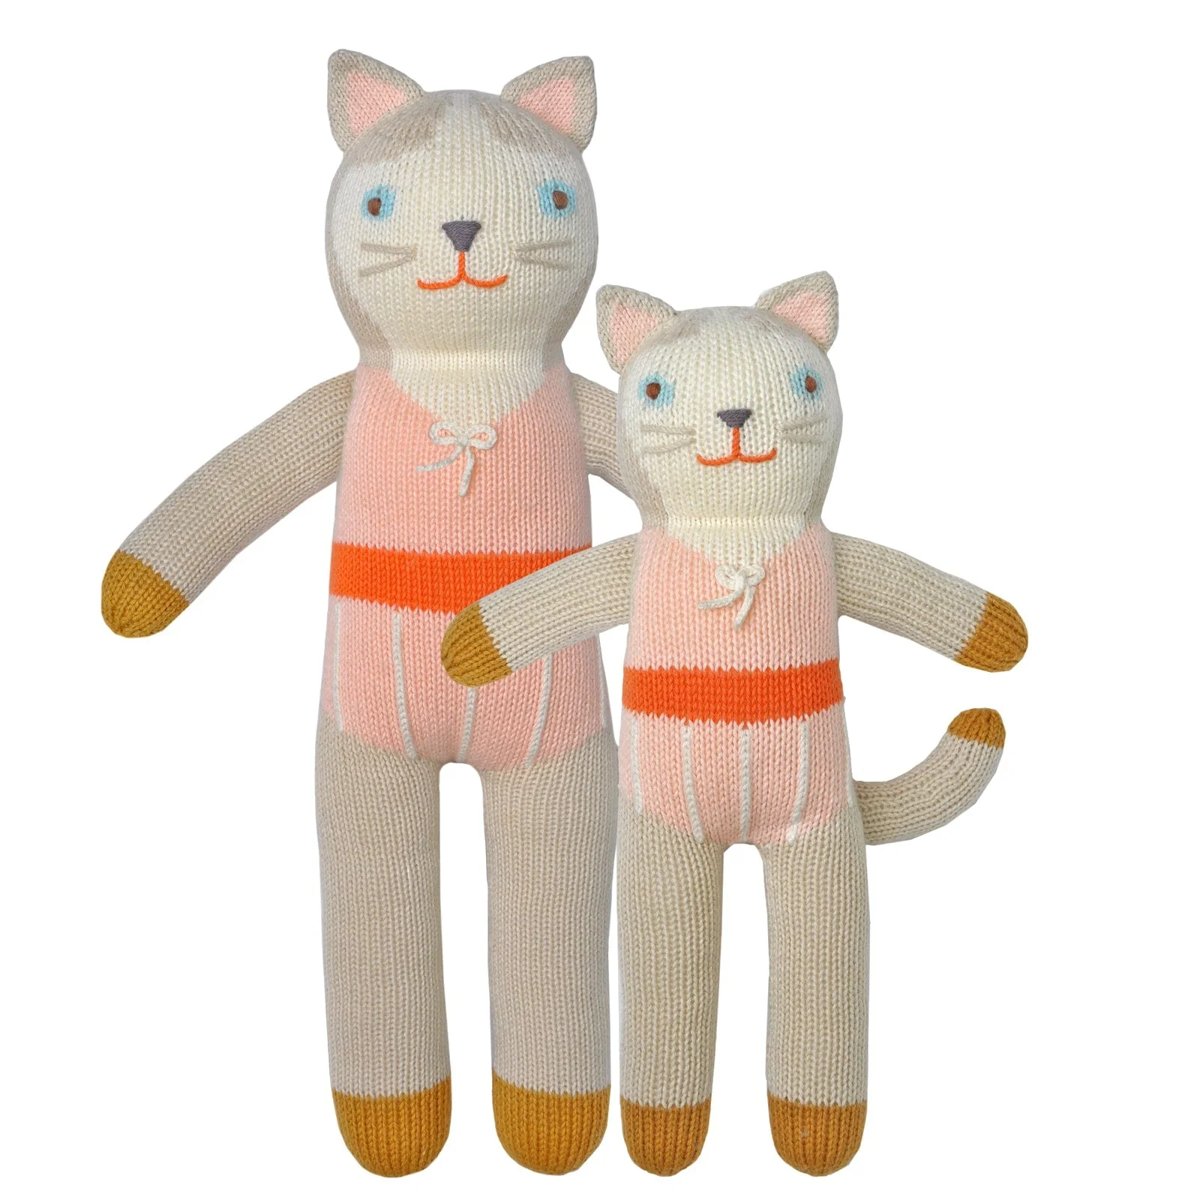 mondocherry - Blabla | "Collette the cat" kids cotton doll